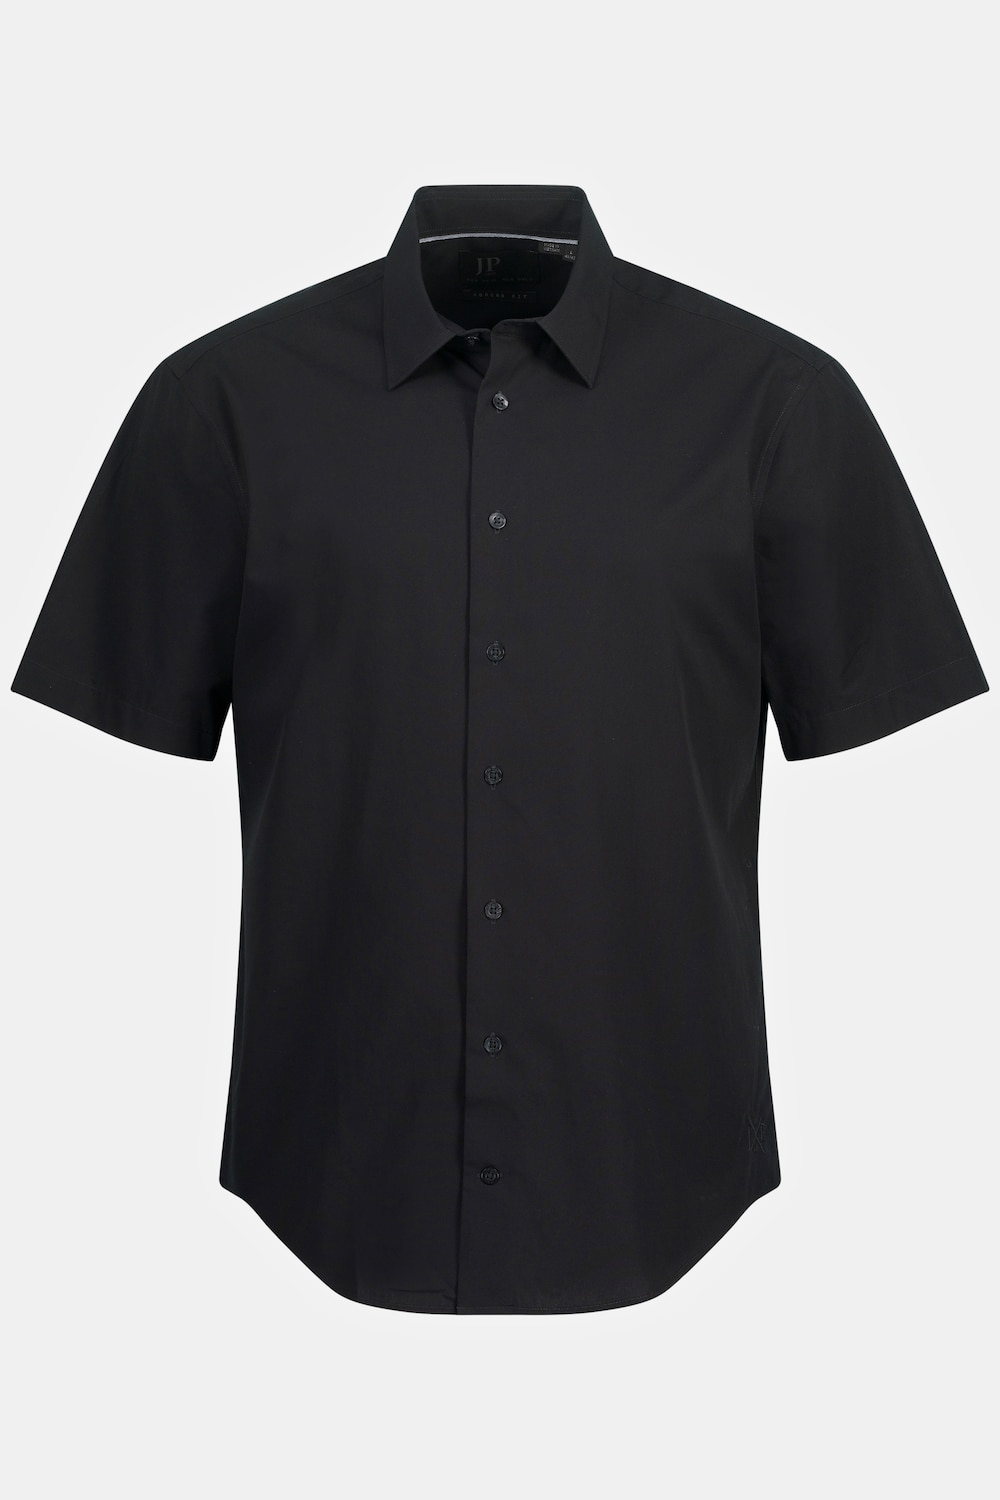 Grote Maten Zakelijk overhemd, Heren, zwart, Maat: 7XL, Katoen, JP1880